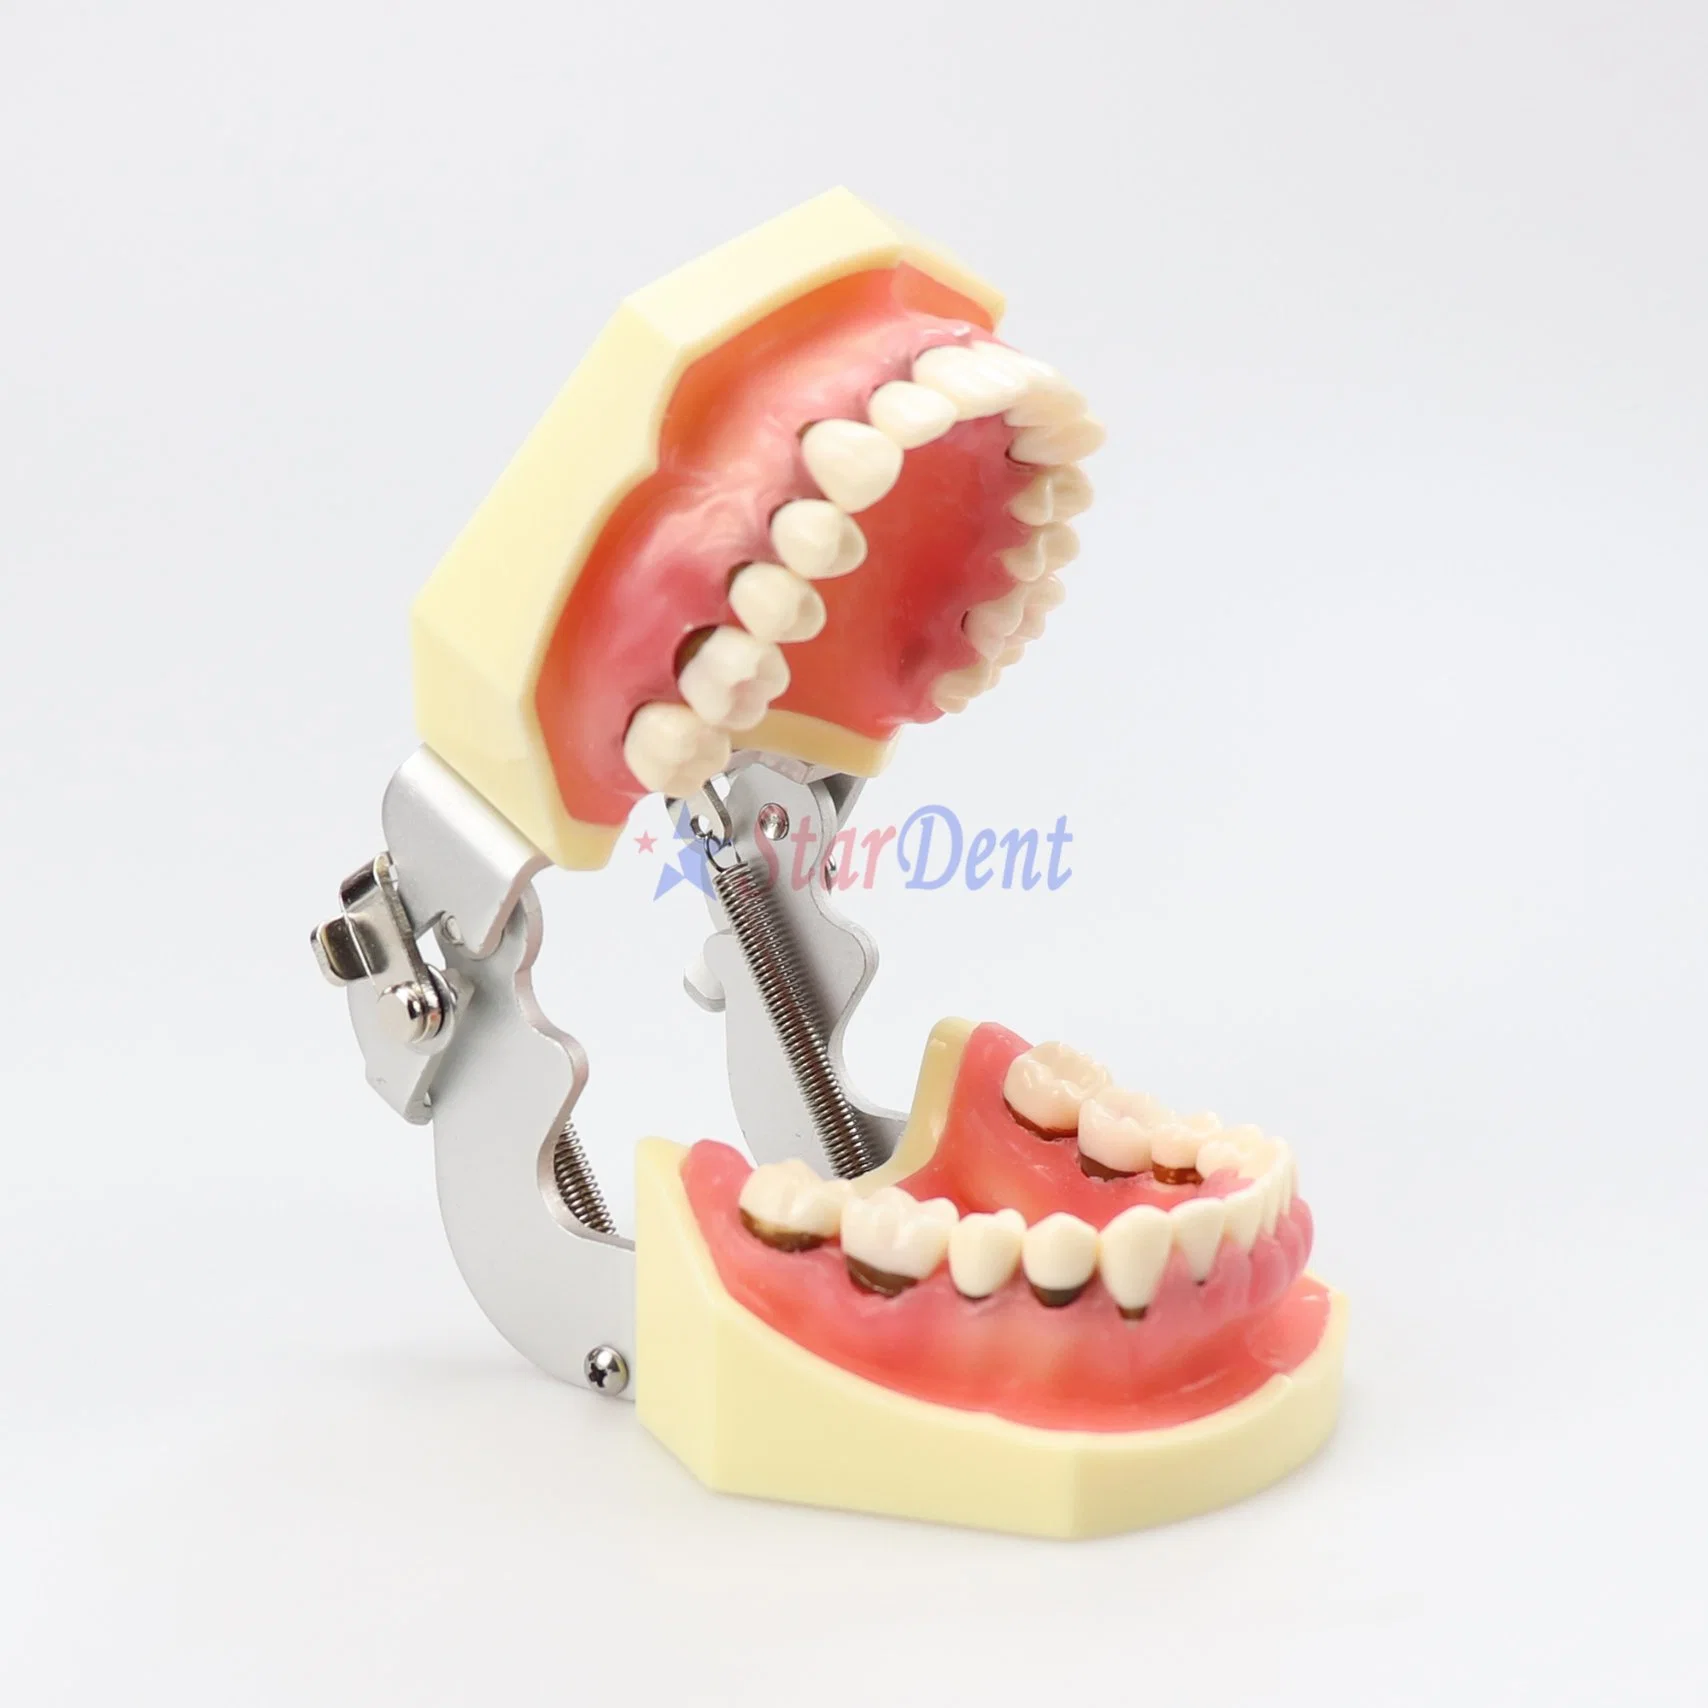 Хорошее качество стоматологических зубодесневых модели преподавания модель демонстрирует серьезно воспалению Gingivae